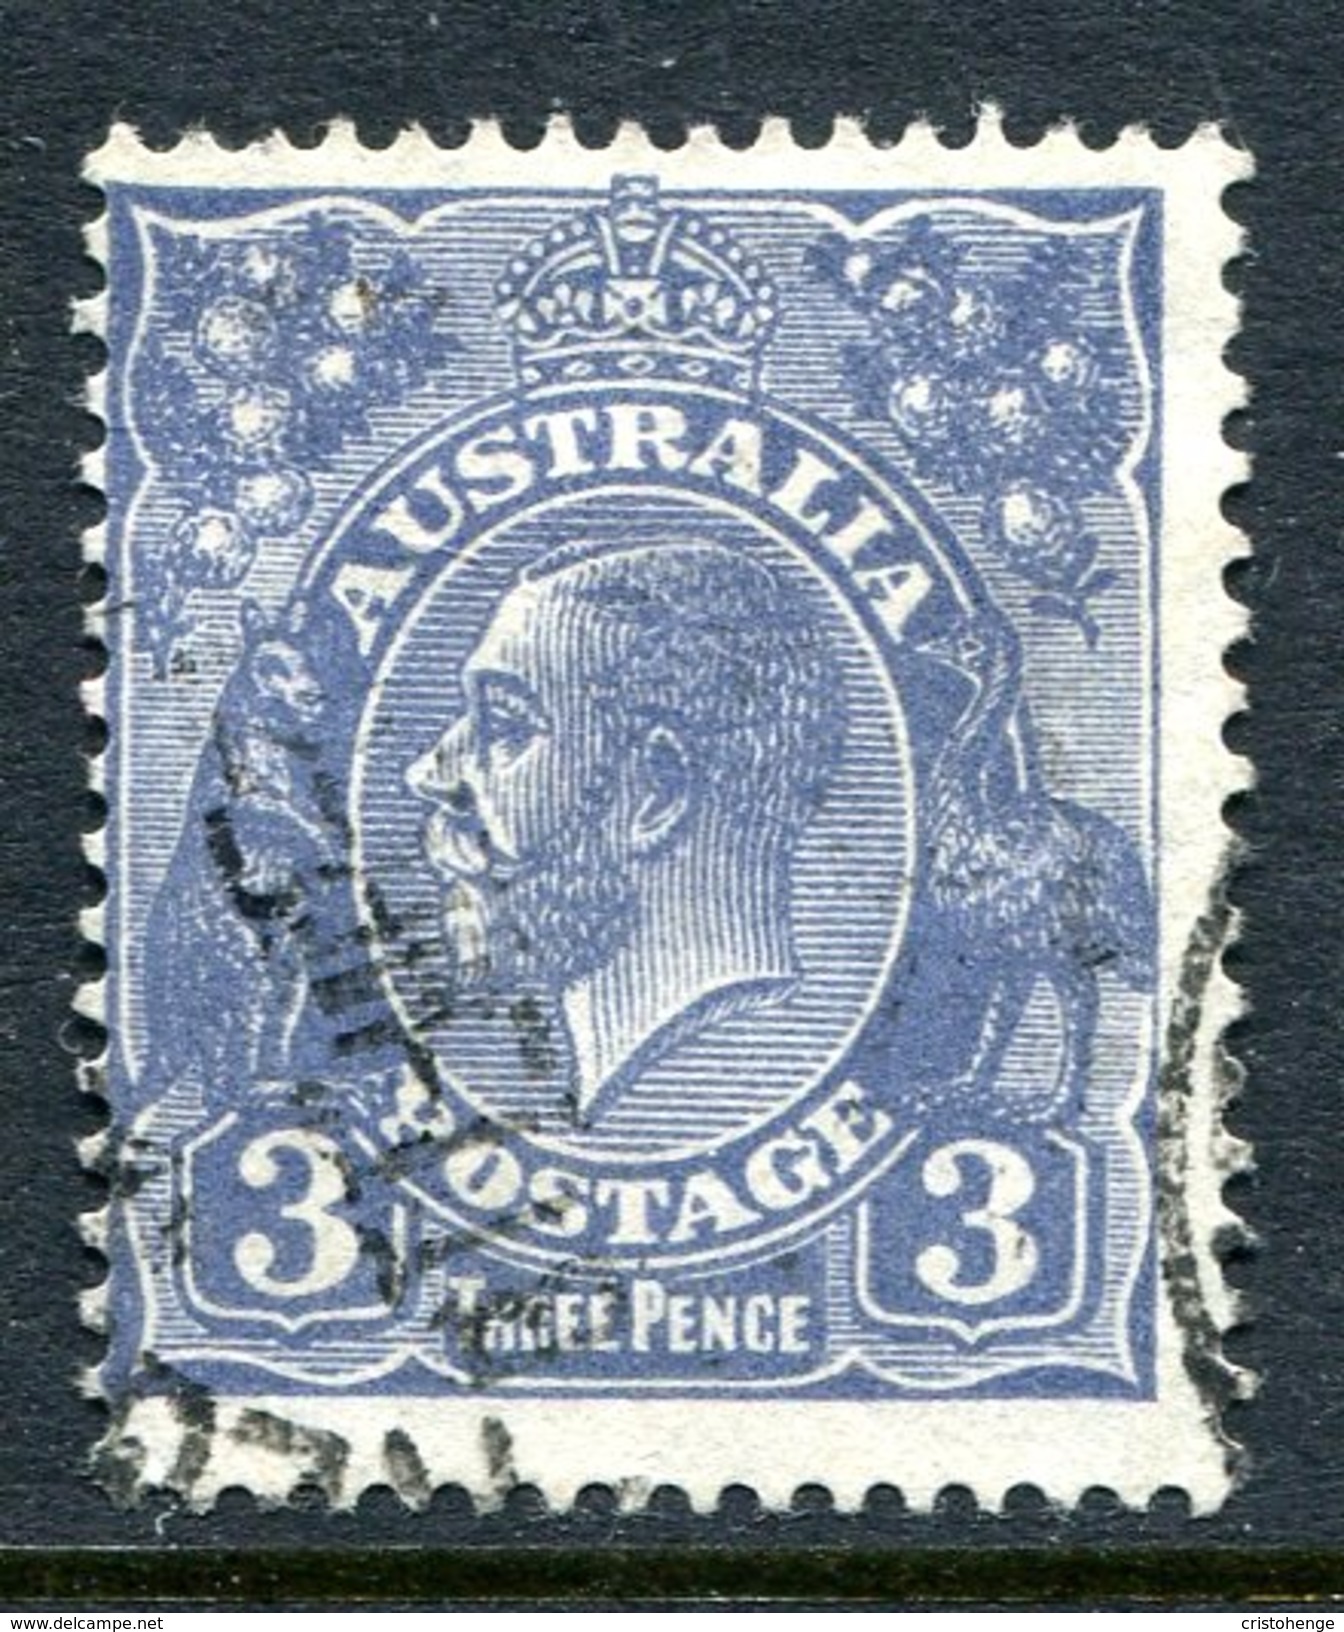 Australia 1926-30 KGV Heads (Wmk. Mult. Crown A) - P.13½ X 12½ - 3d Deep Ultramarine - Die II - Used (SG 100b) - Used Stamps